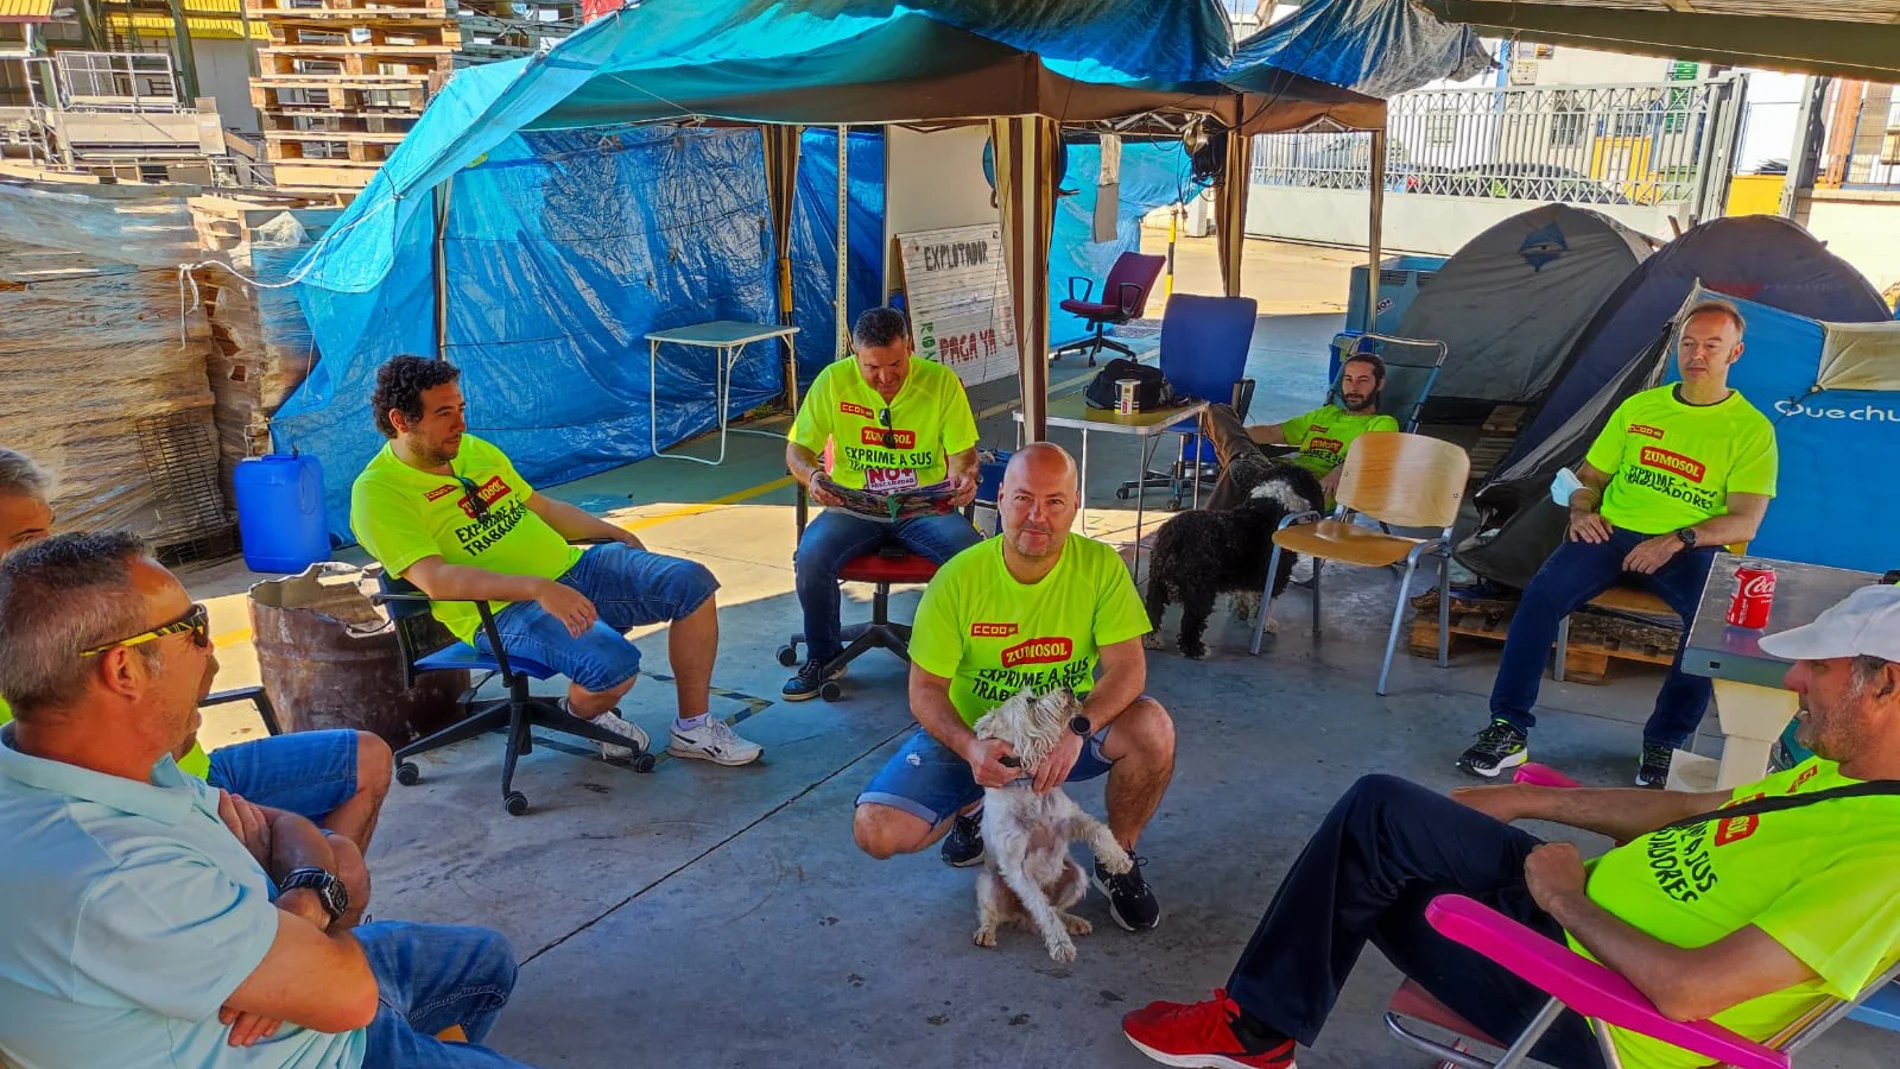 Los trabajadores de Zumosol acampados en las instalaciones de Palma del Río, Córdoba